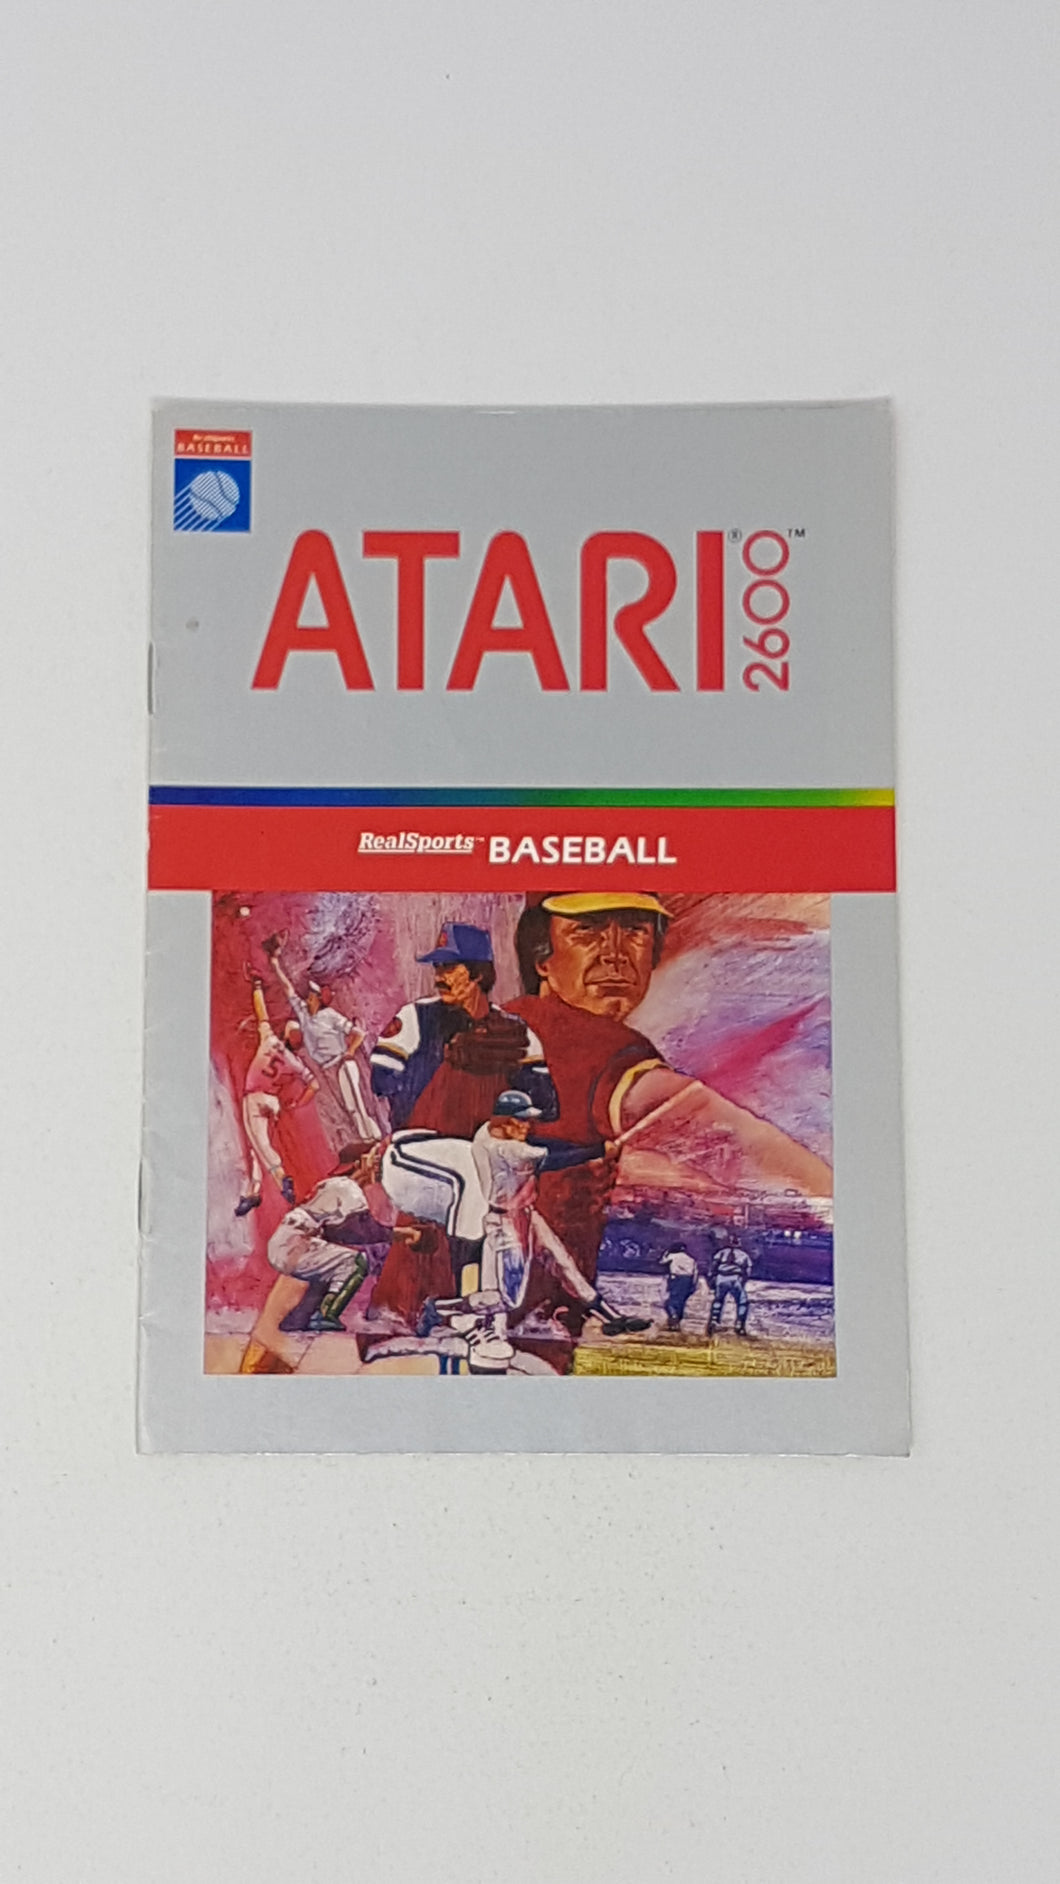 RealSports Baseball [manuel] - Atari2600